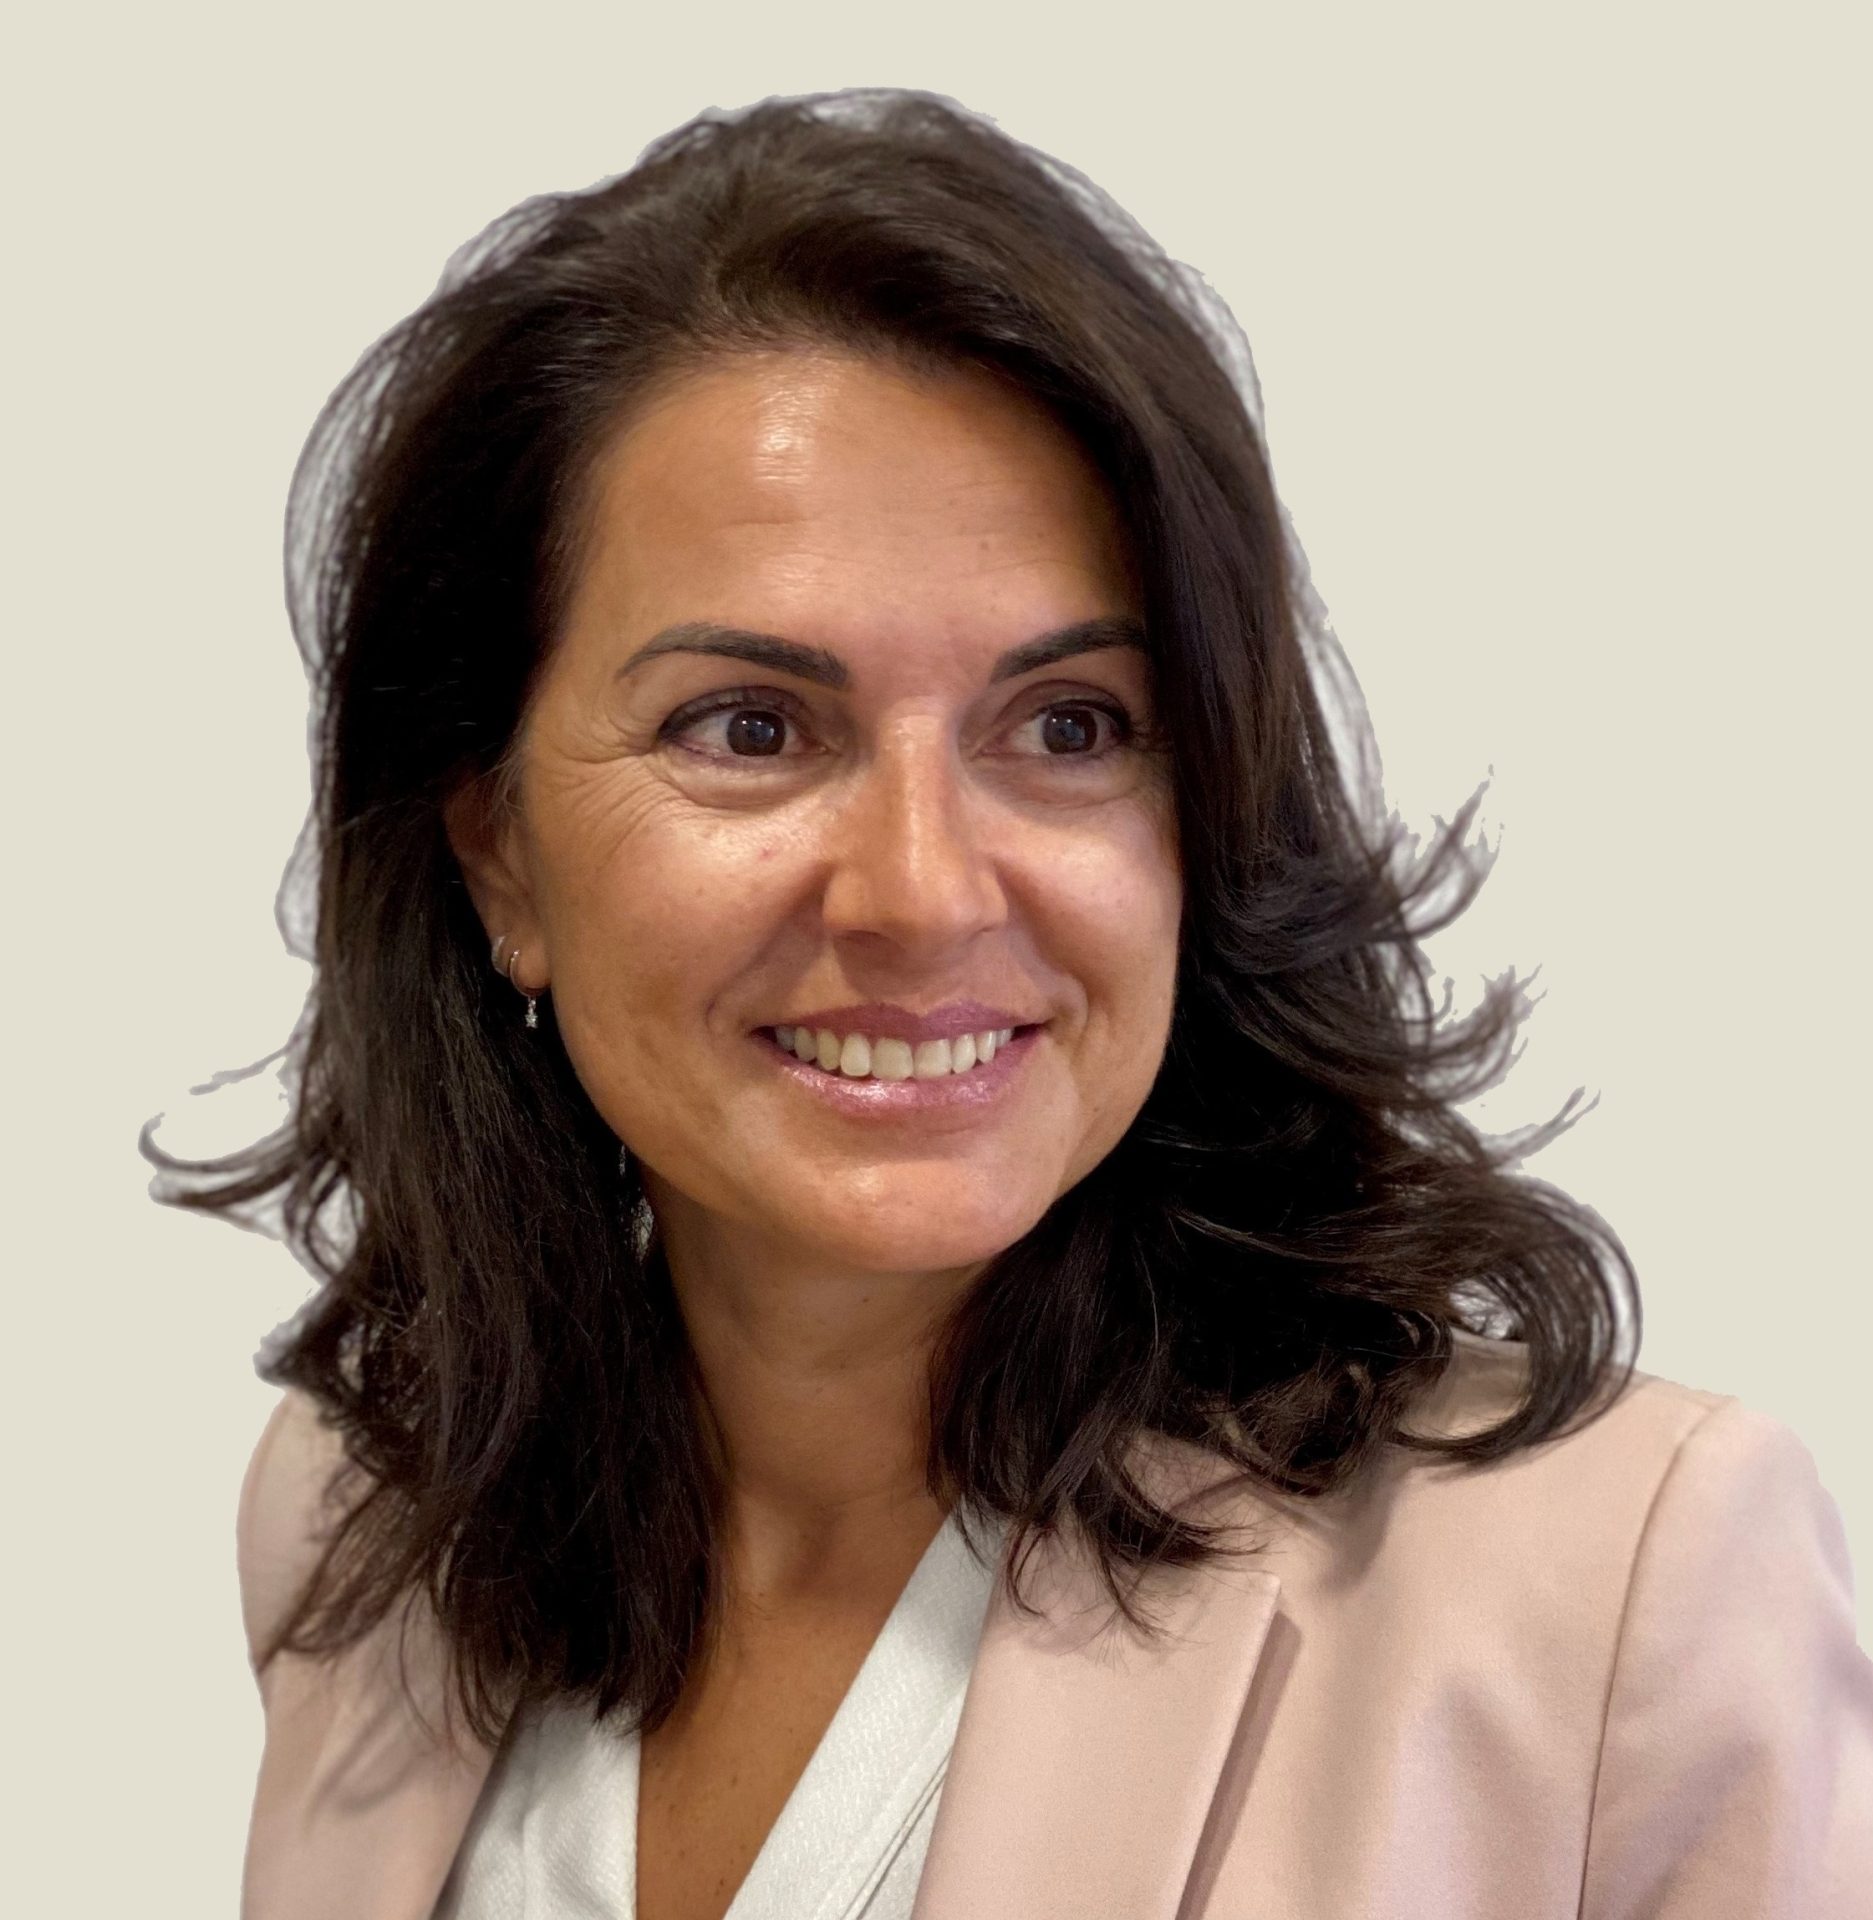 Patricia Vara es directora financiera en Portocolom AV